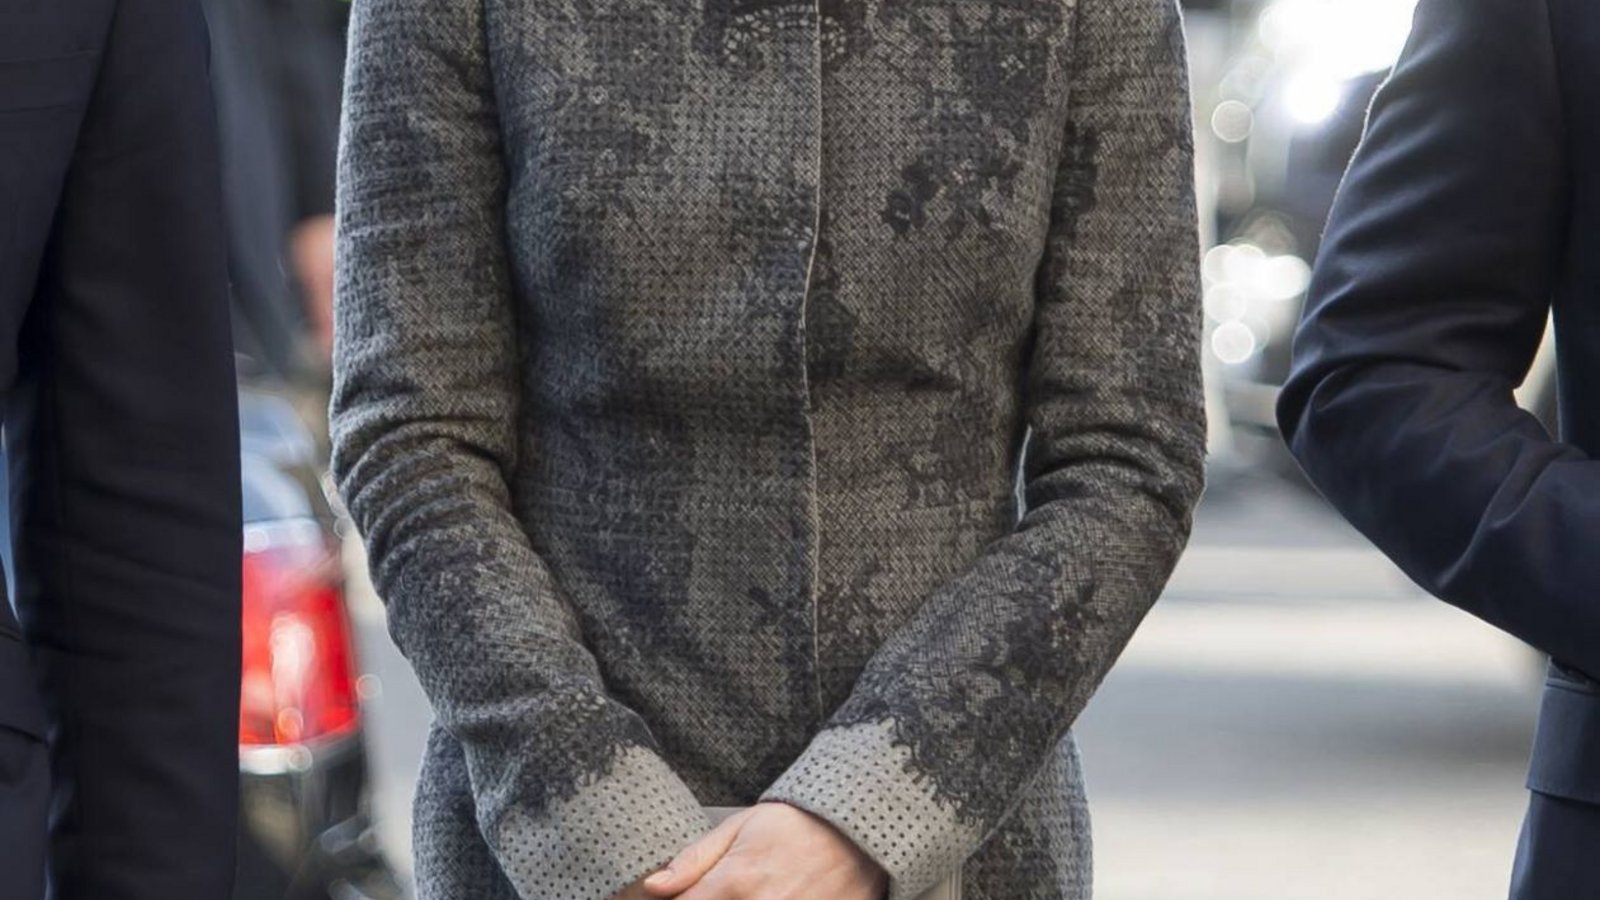 Dieser graue Erdem-Mantel, den Herzogin Kate 2016 beim Commonwealth-Tag trug, könnte auch im Kleiderschrank von Herzogin Camilla oder sogar der Queen hängen. Schöner ist es, wenn Kate sich jugendlicher kleidet.Foto: imago/i Images/imago stock&people